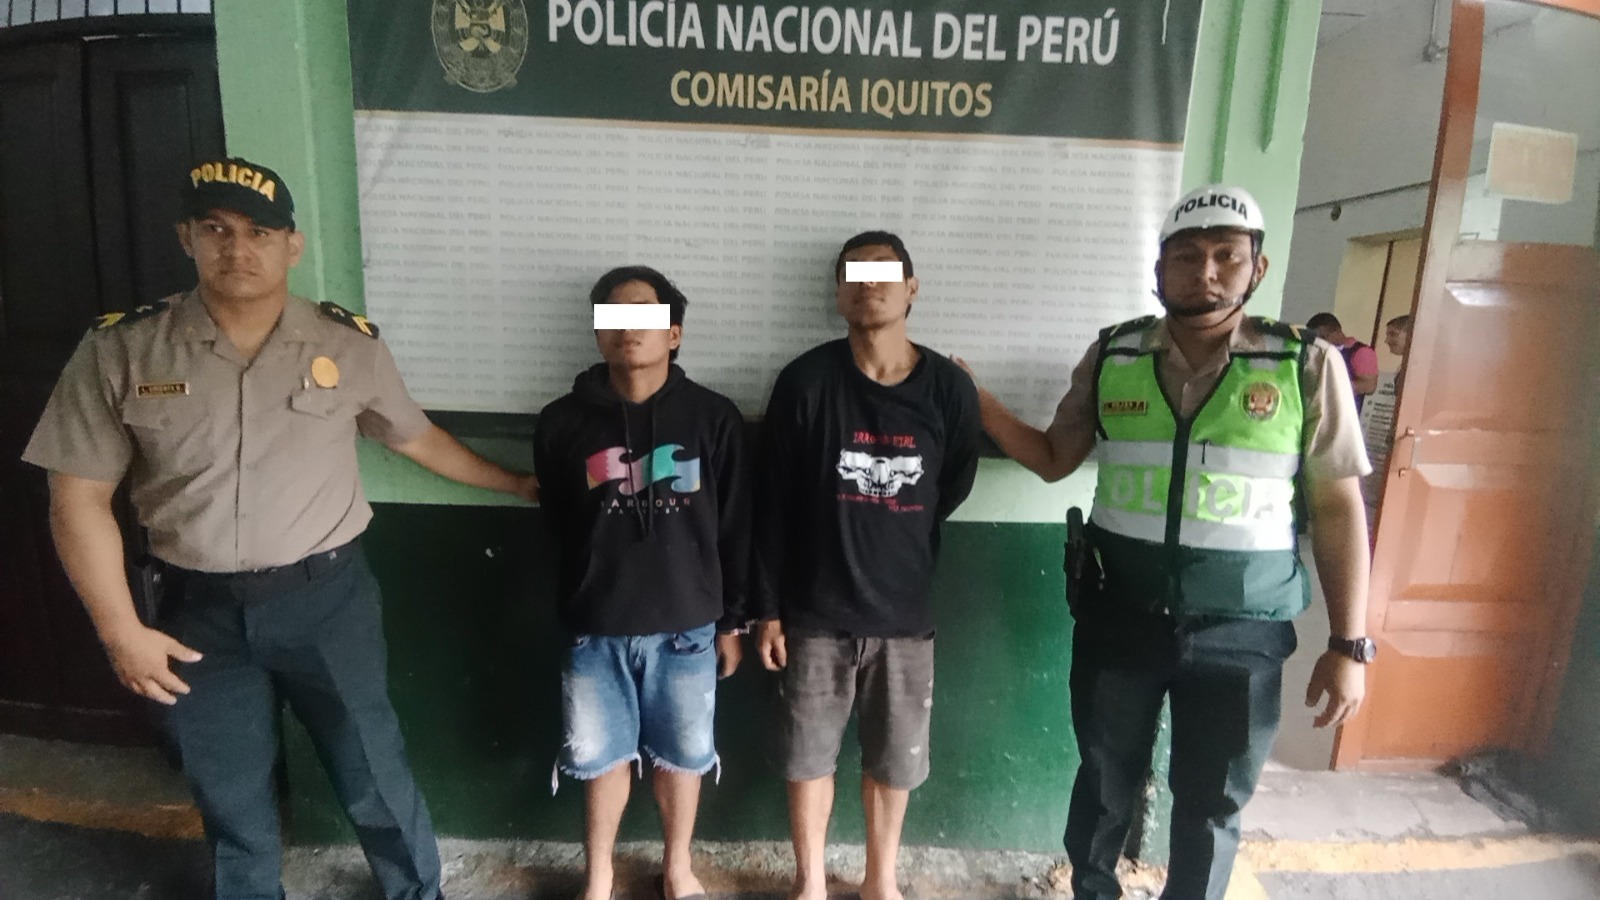 Policías de la Comisaria Iquitos desarticulan banda criminal “Los Yakuzas”